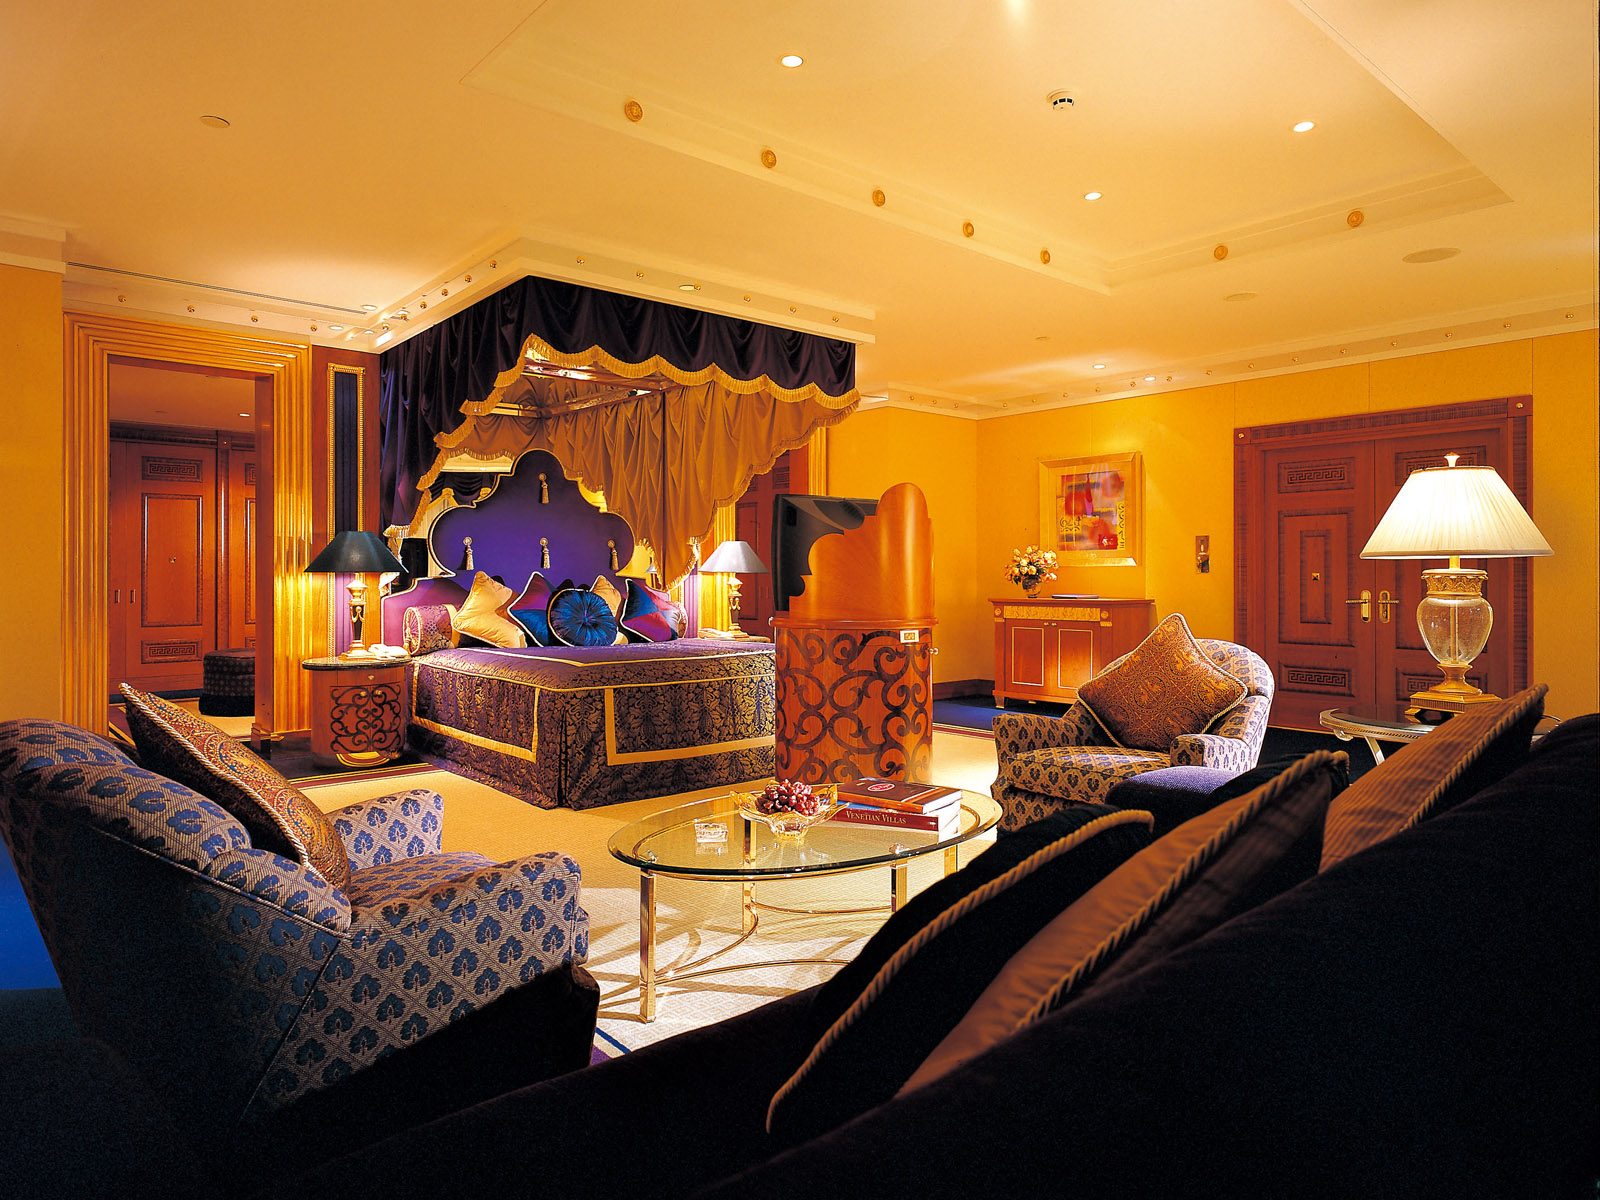 世界上最豪华七星级酒店迪拜塔高清晰壁纸_风景_太平洋电脑网